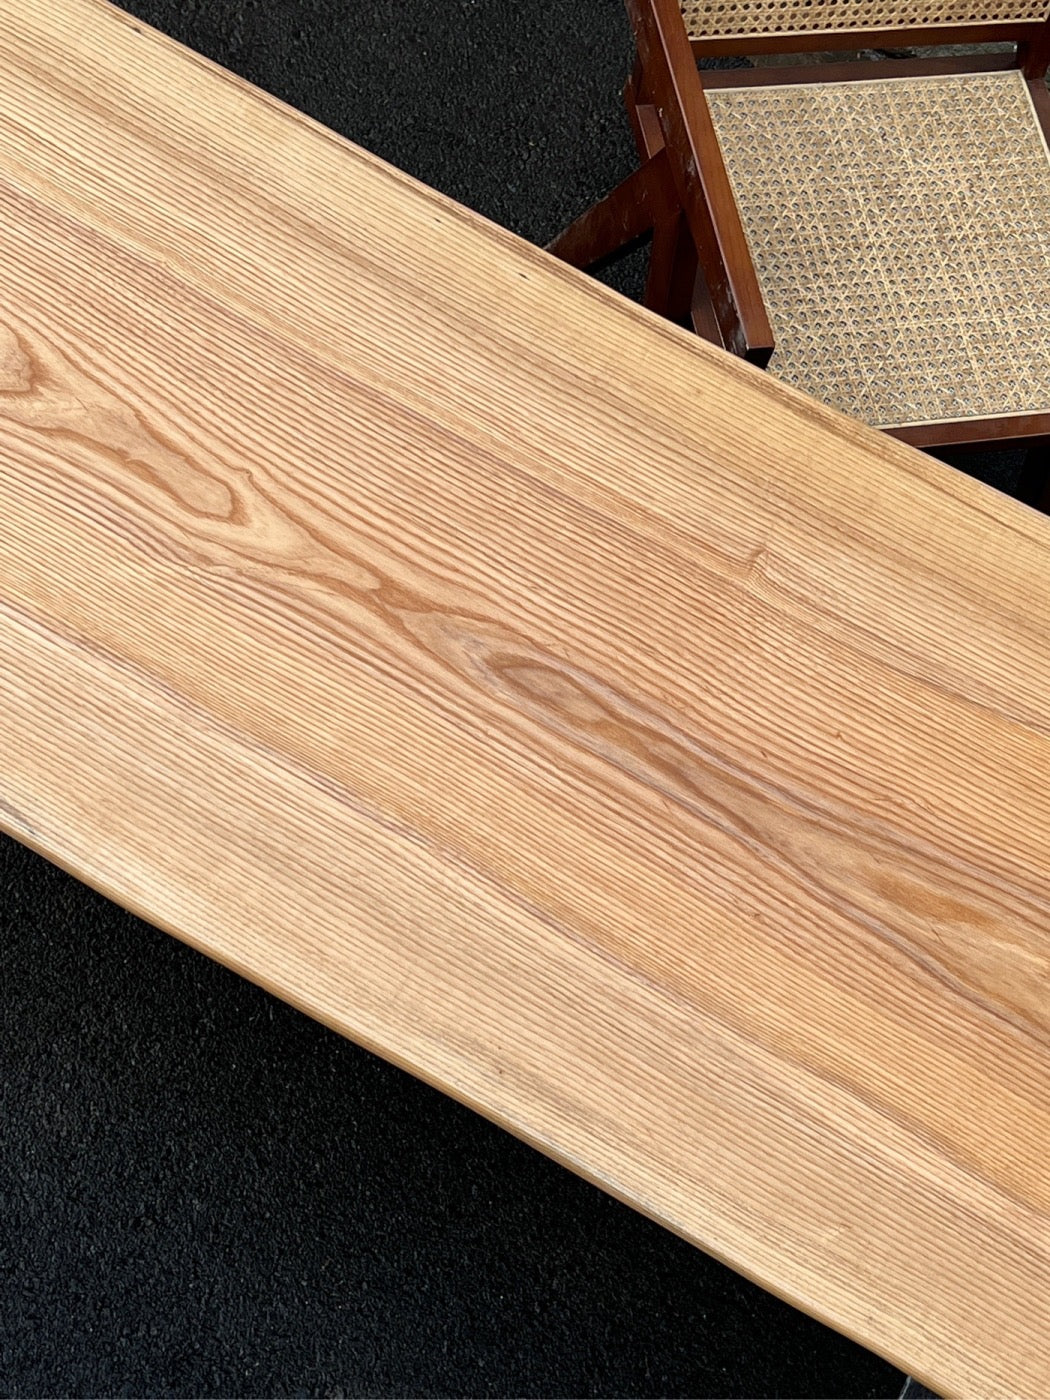 Mesa de losa de madera de América del Norte, mesa de losa de borde vivo de madera de fresno